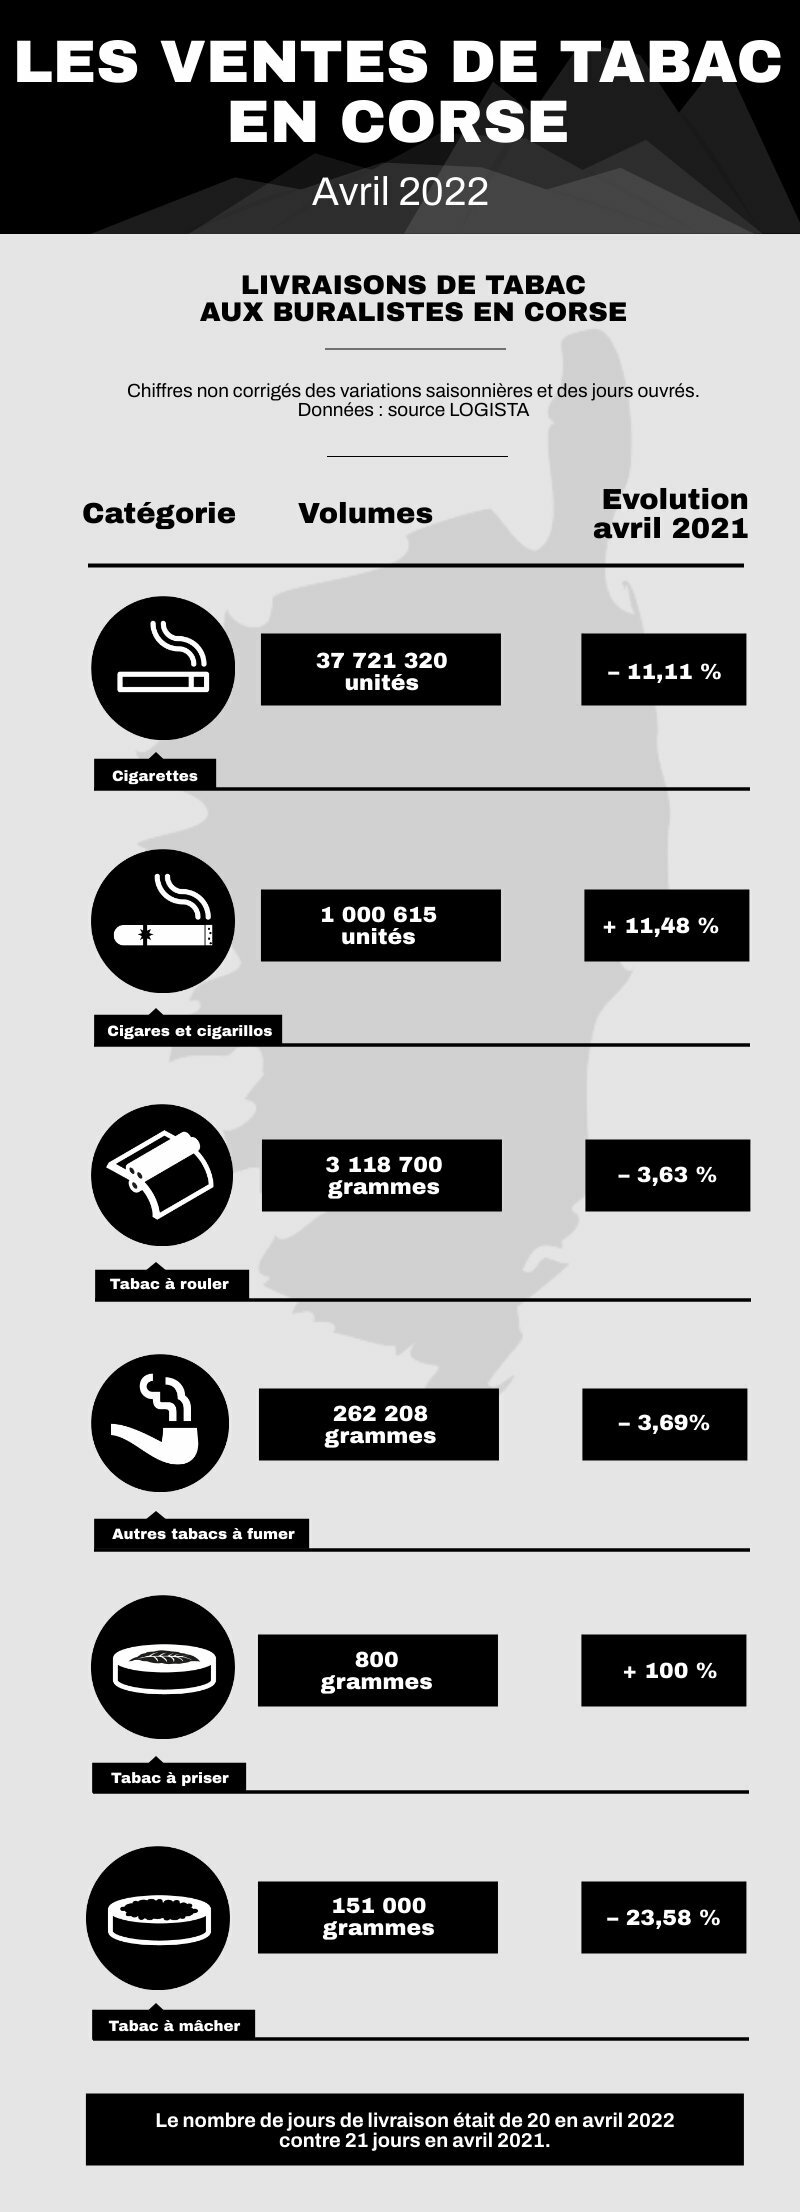 Infographie des ventes de tabac en Corse en avril 2022